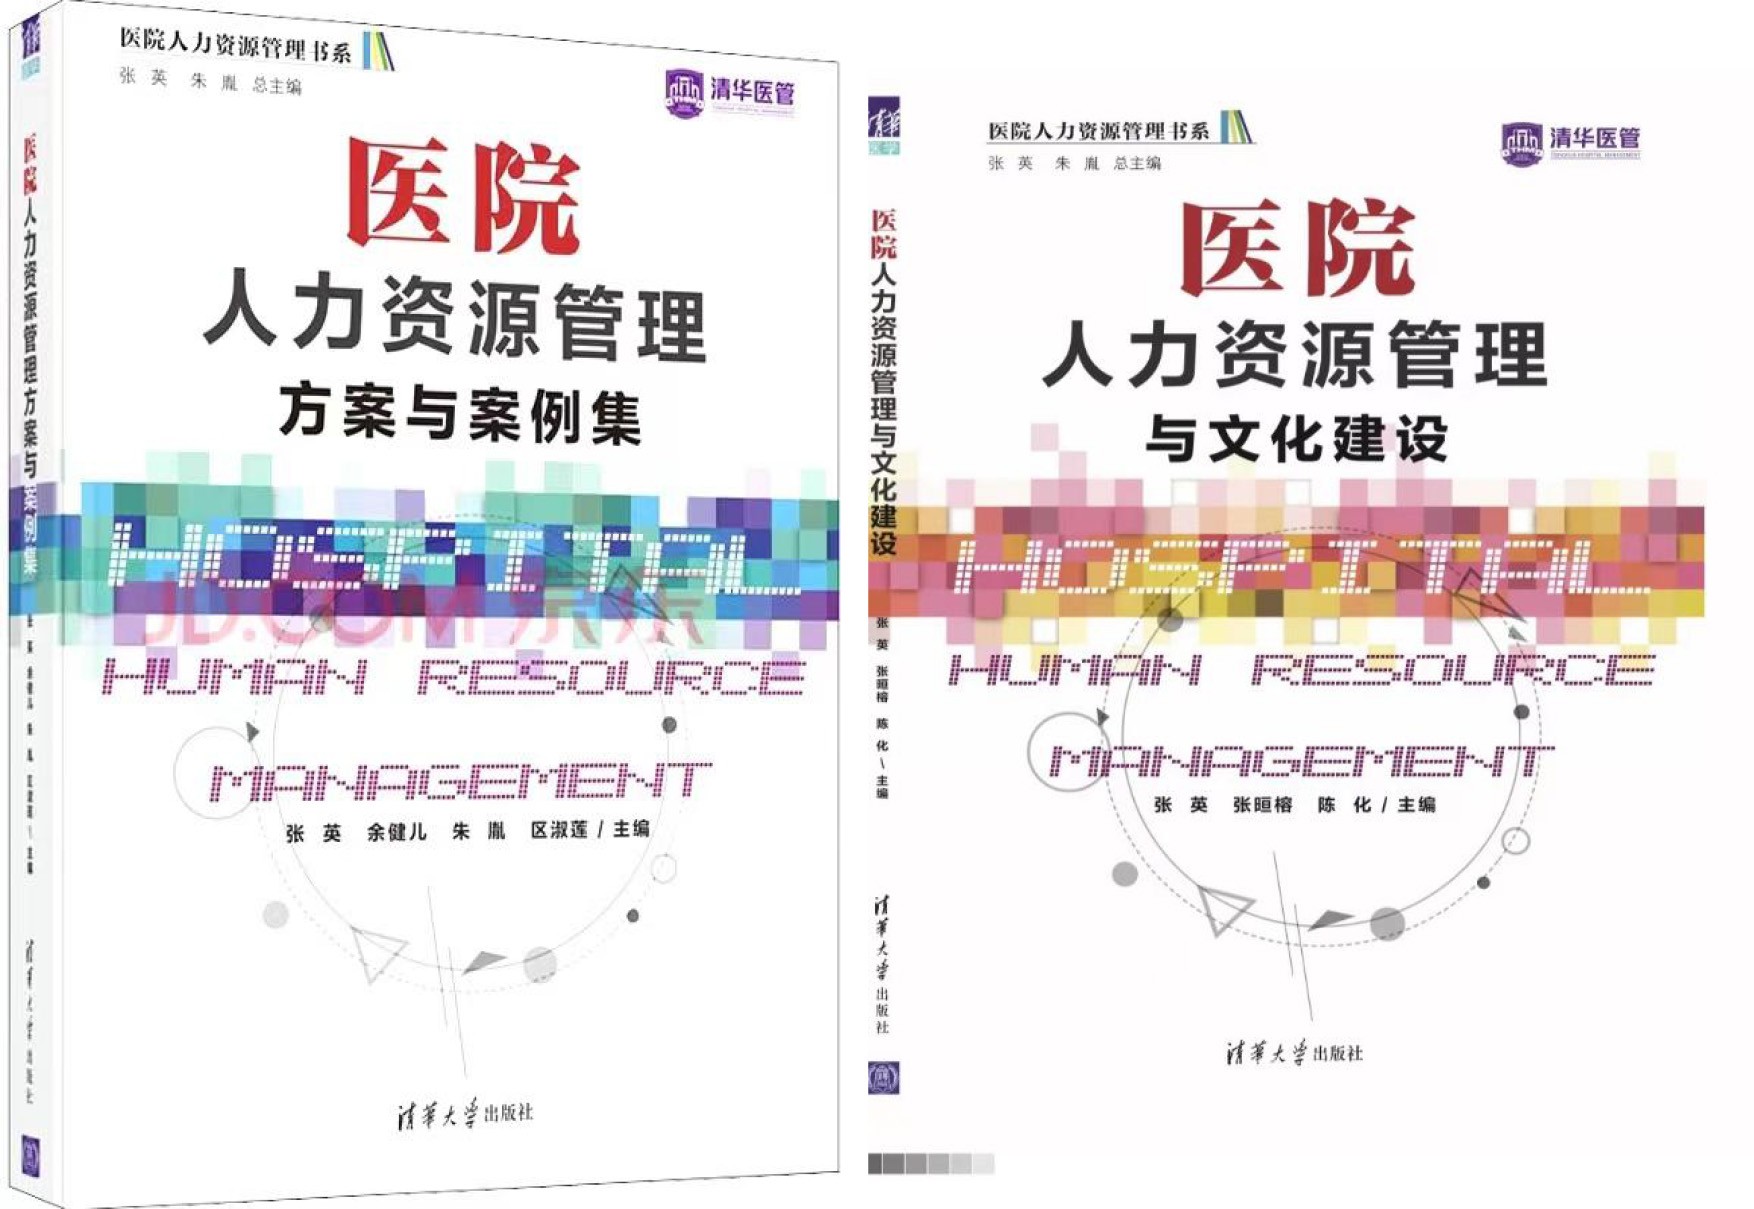 医院人力资源管理书系由清华大学出版社出版发行